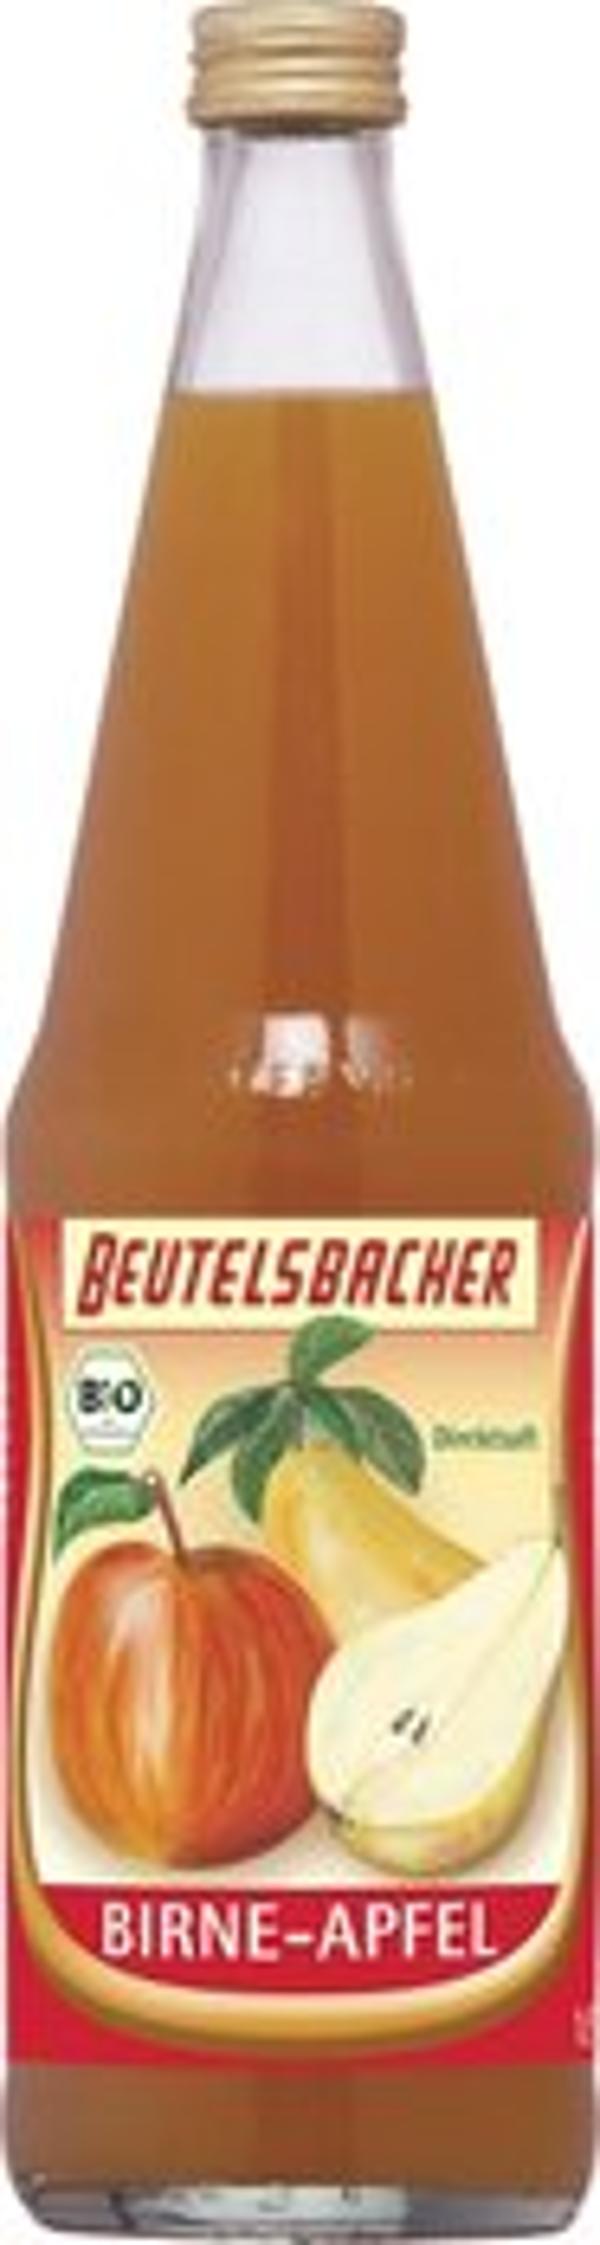 Produktfoto zu Beutelsbacher Birne Apfelsaft 1l